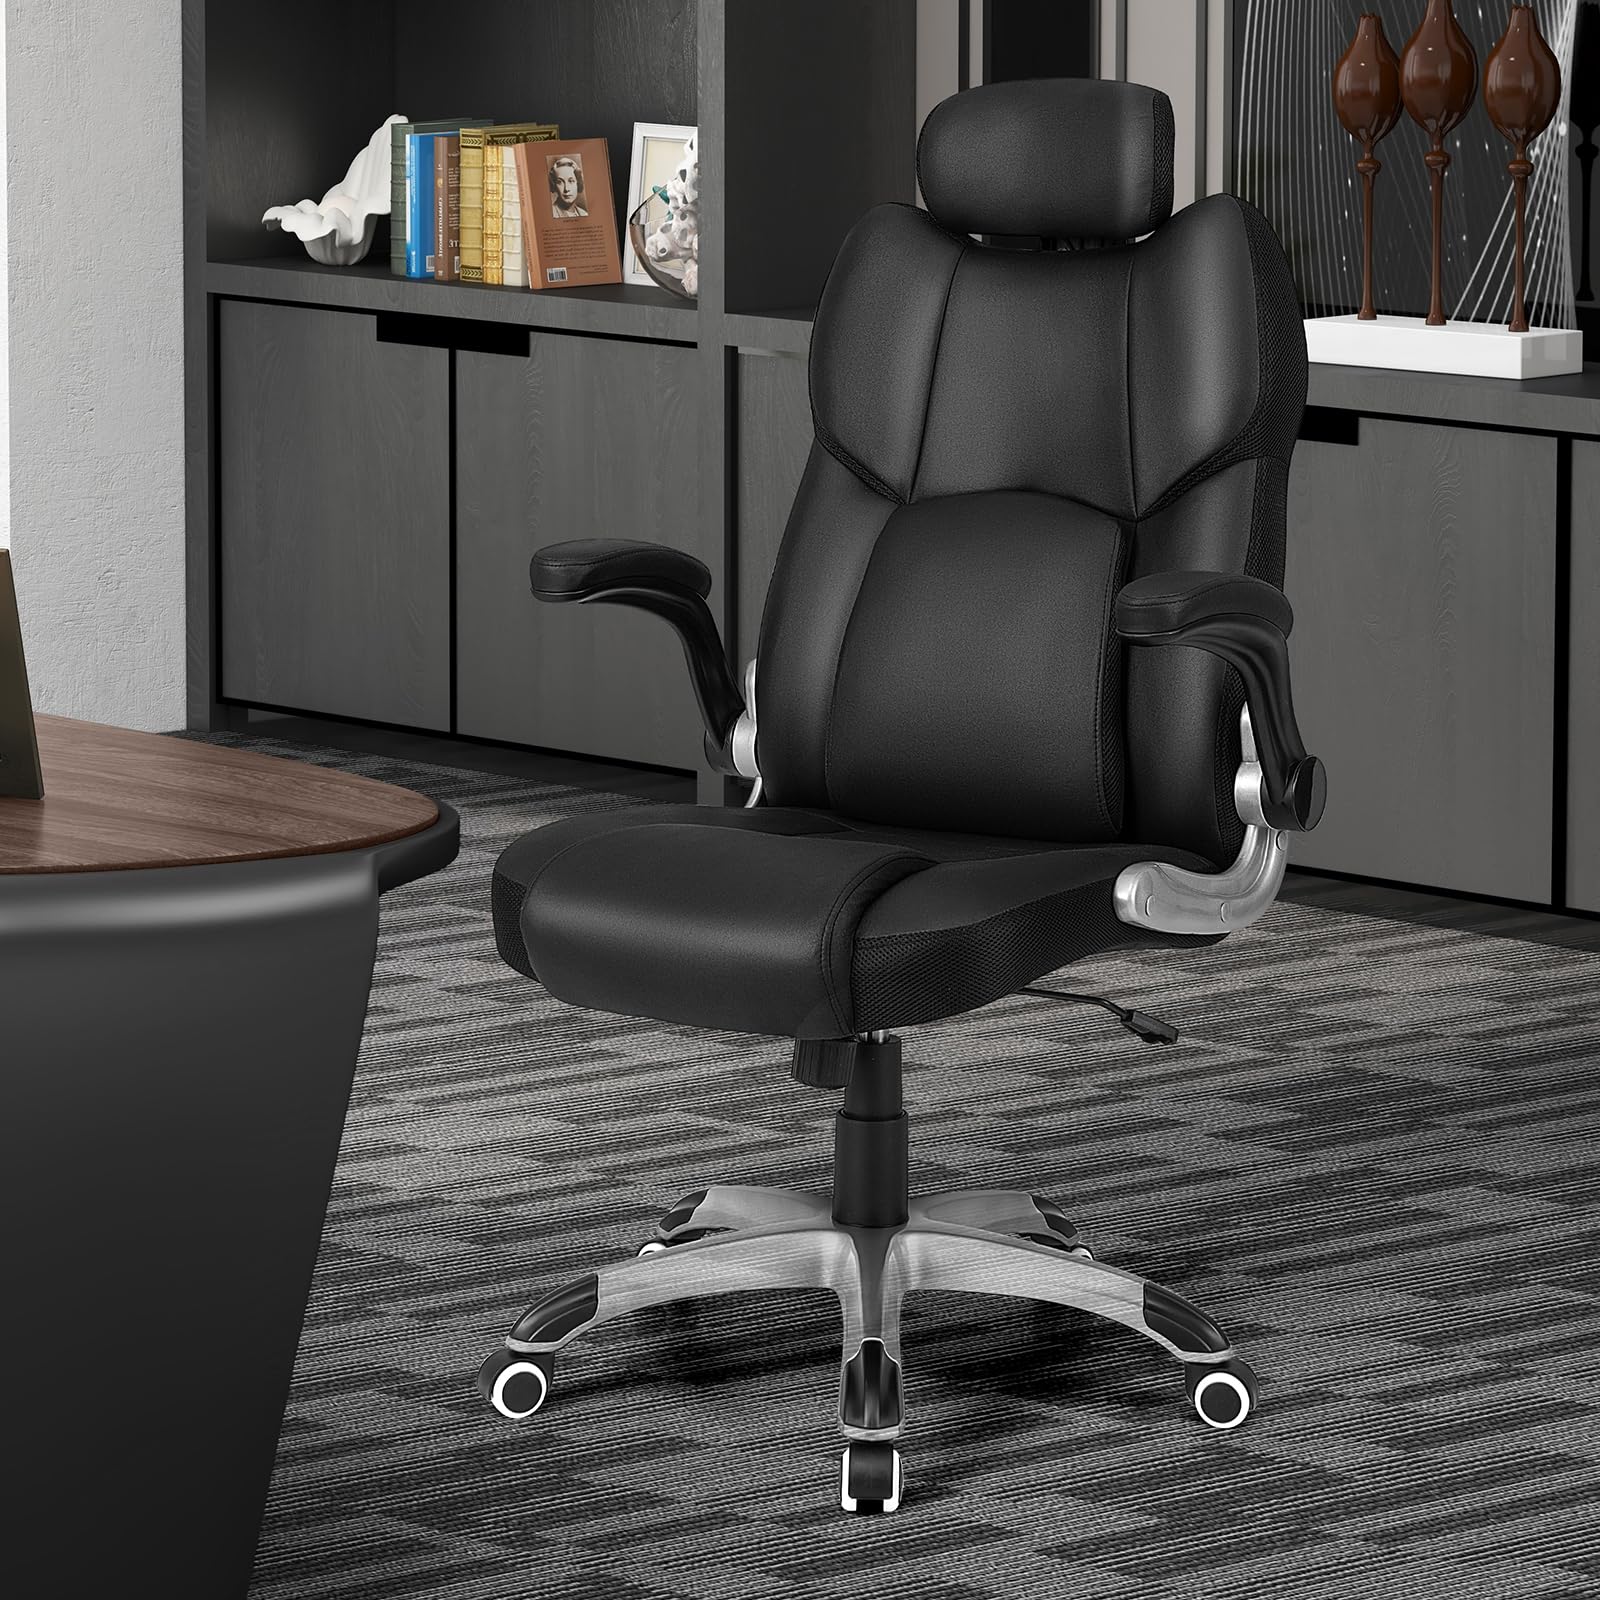 Giantex Executive Office Chair